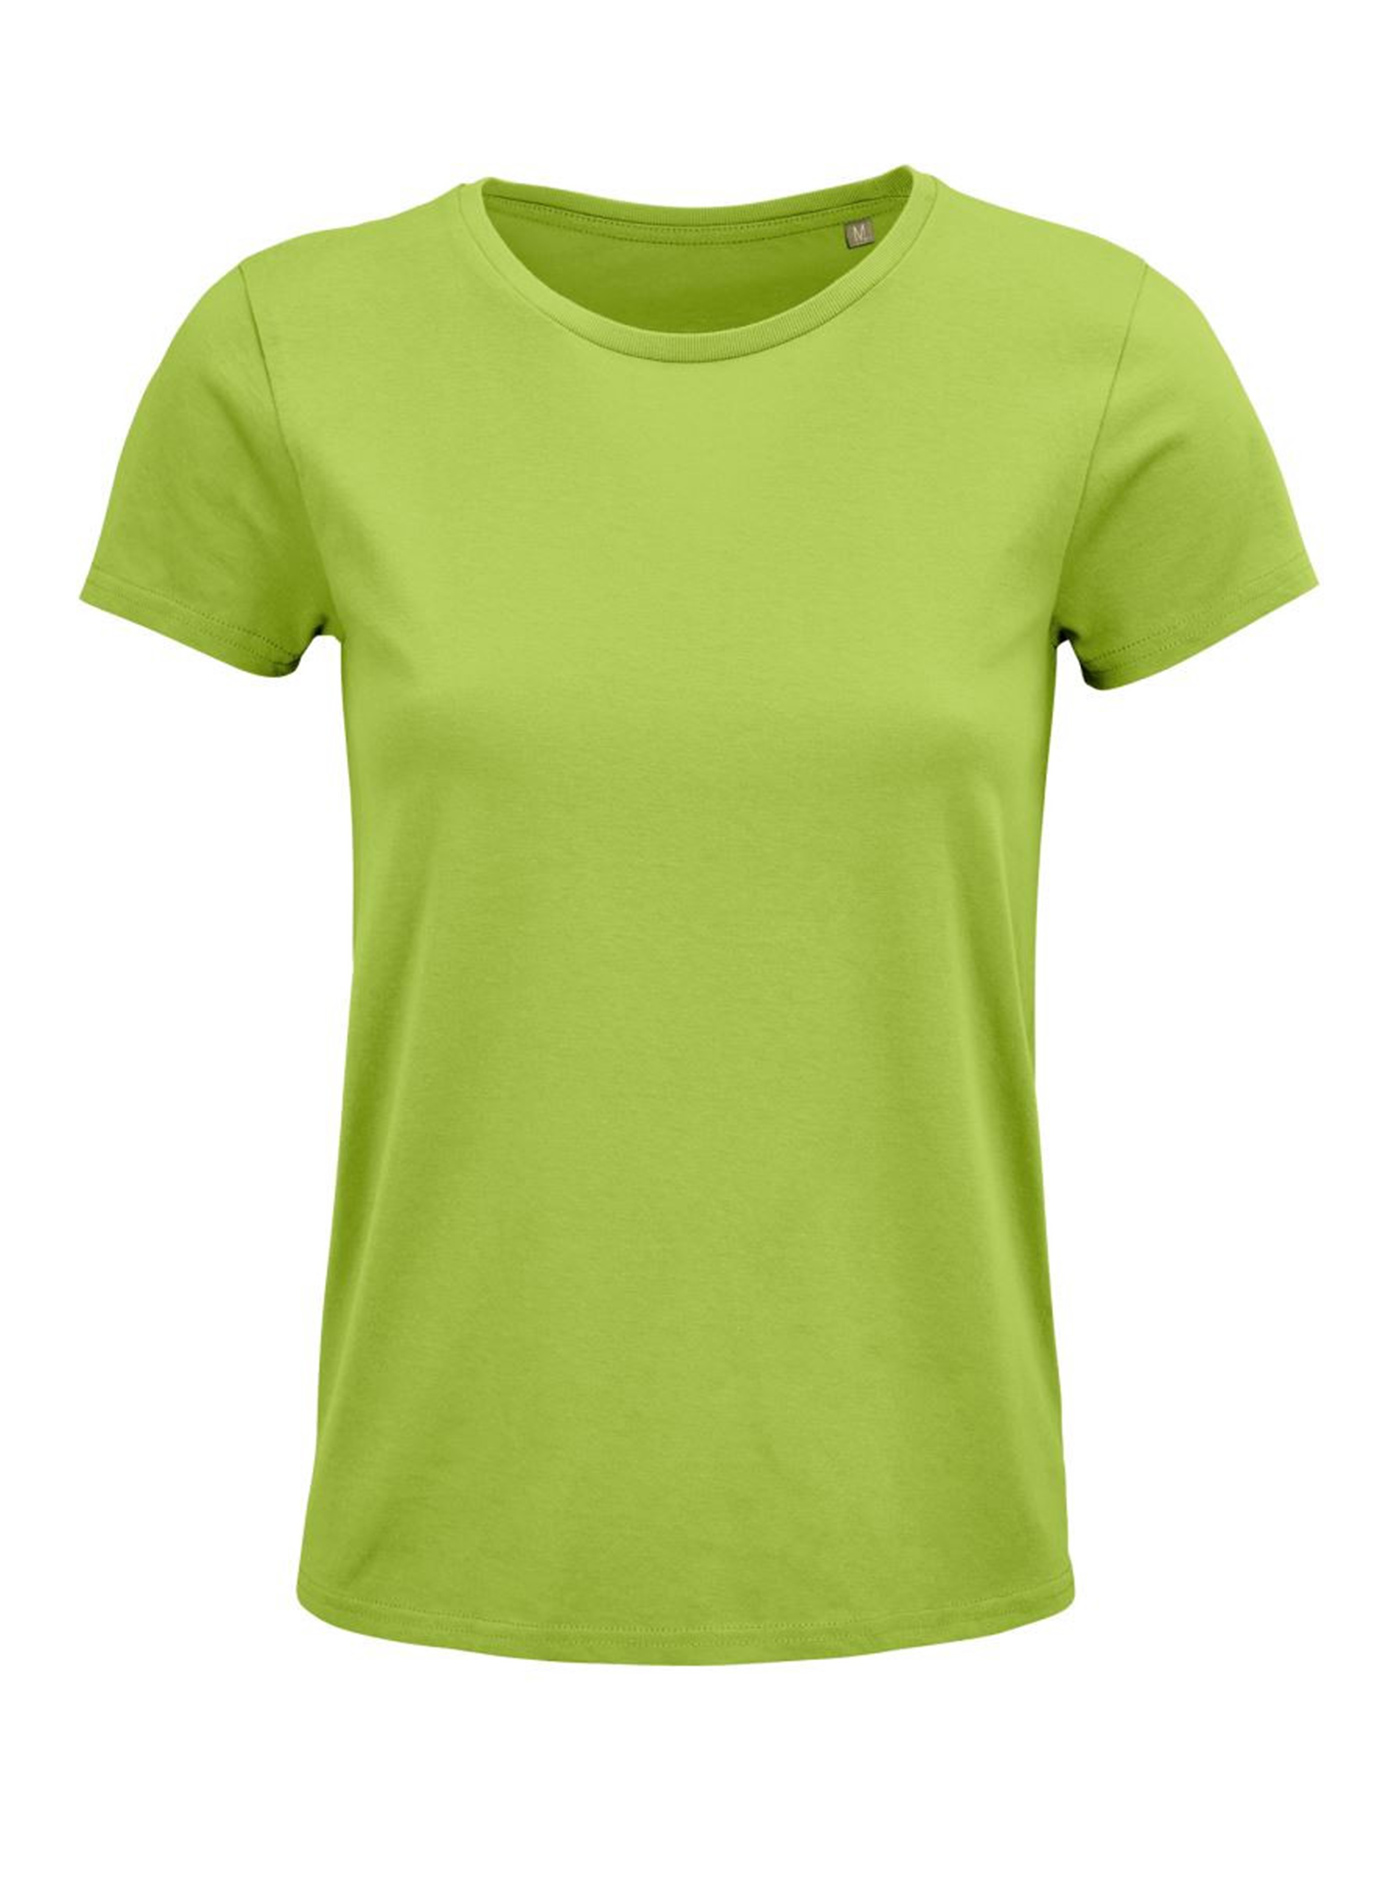 Dámské tričko SOL'S Crusader - jablíčkově zelená XL